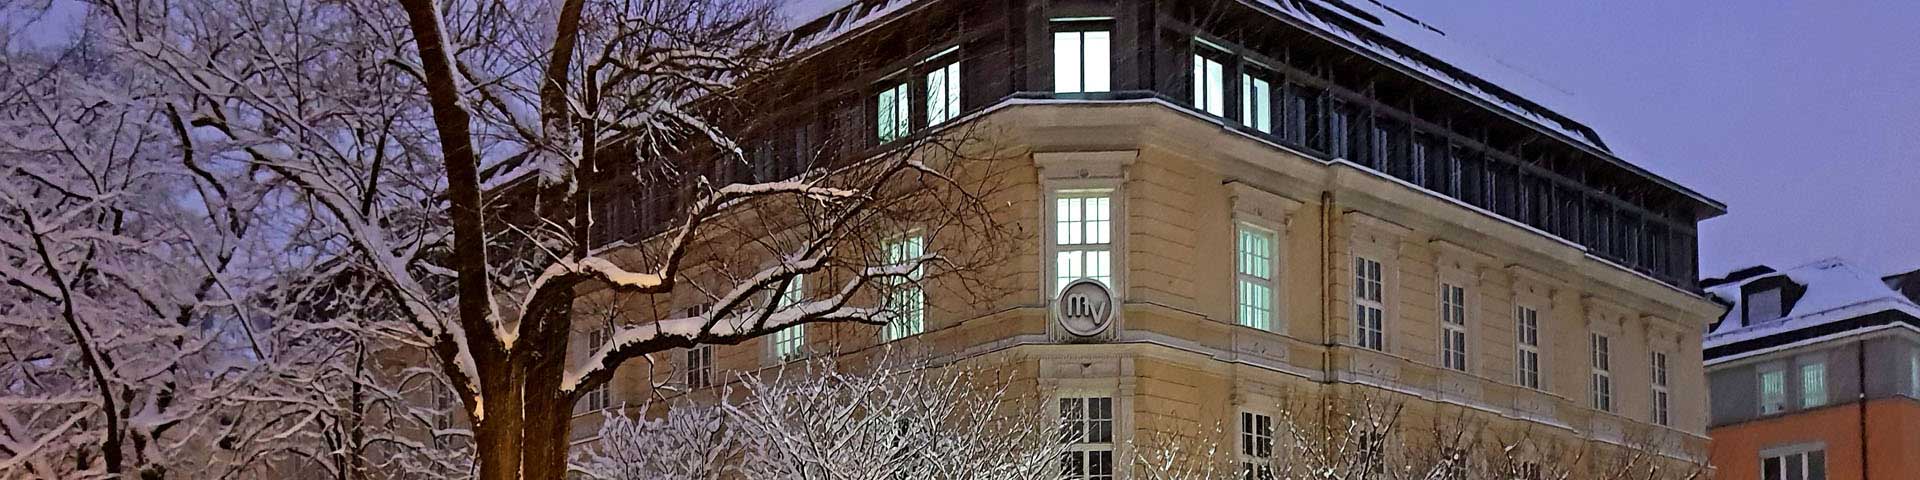 Direktionsgebäude des Münchener Verein in einer Winternacht